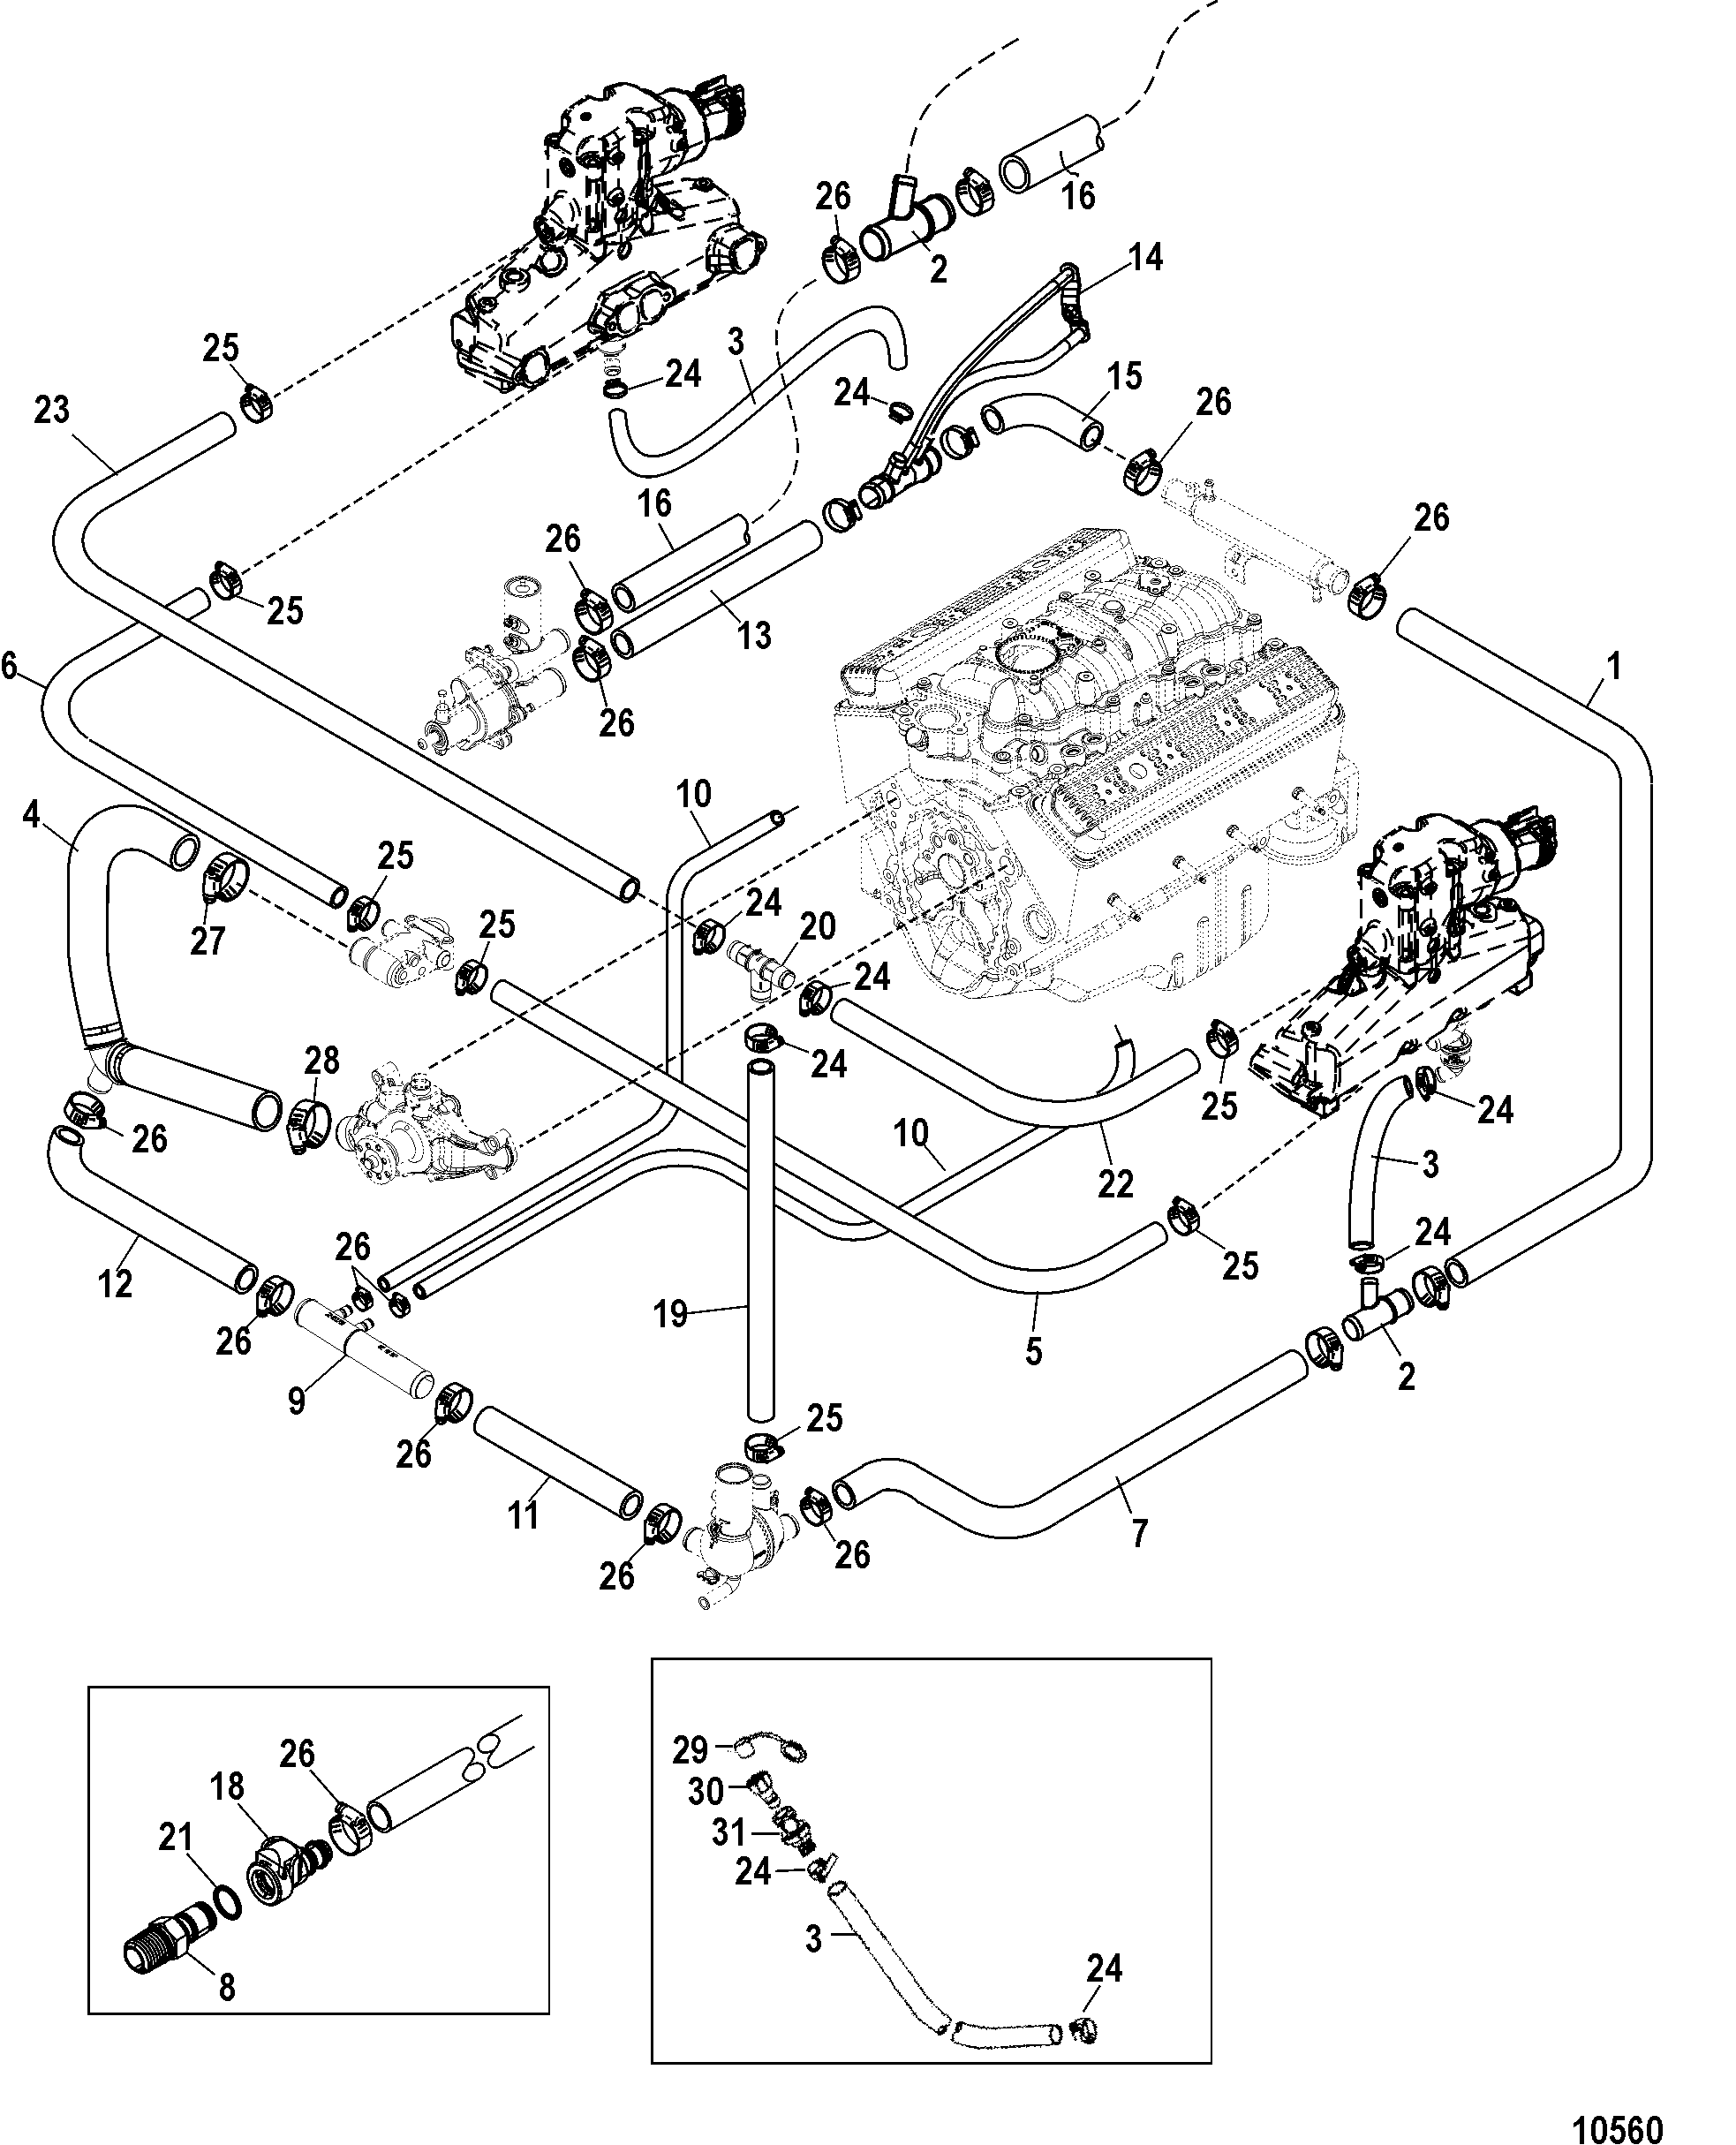 Vw 2.0 Engine Parts Diagram 1